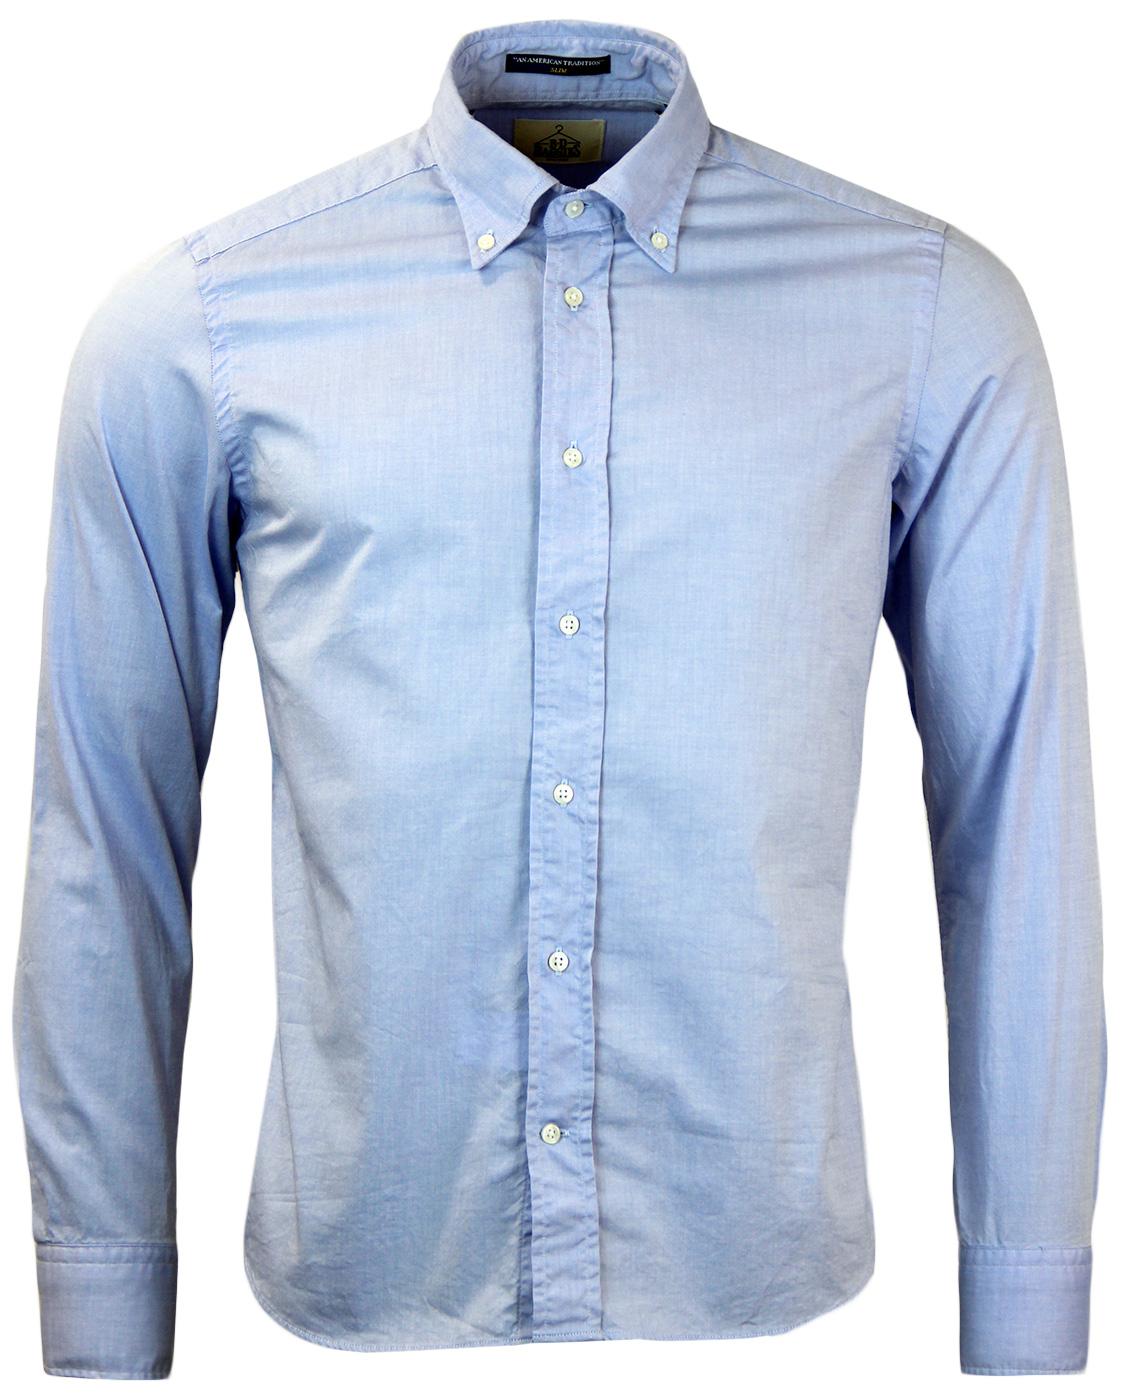 B D BAGGIES Dexter Retro Mod 60s Oxford Shirt in Light Blue